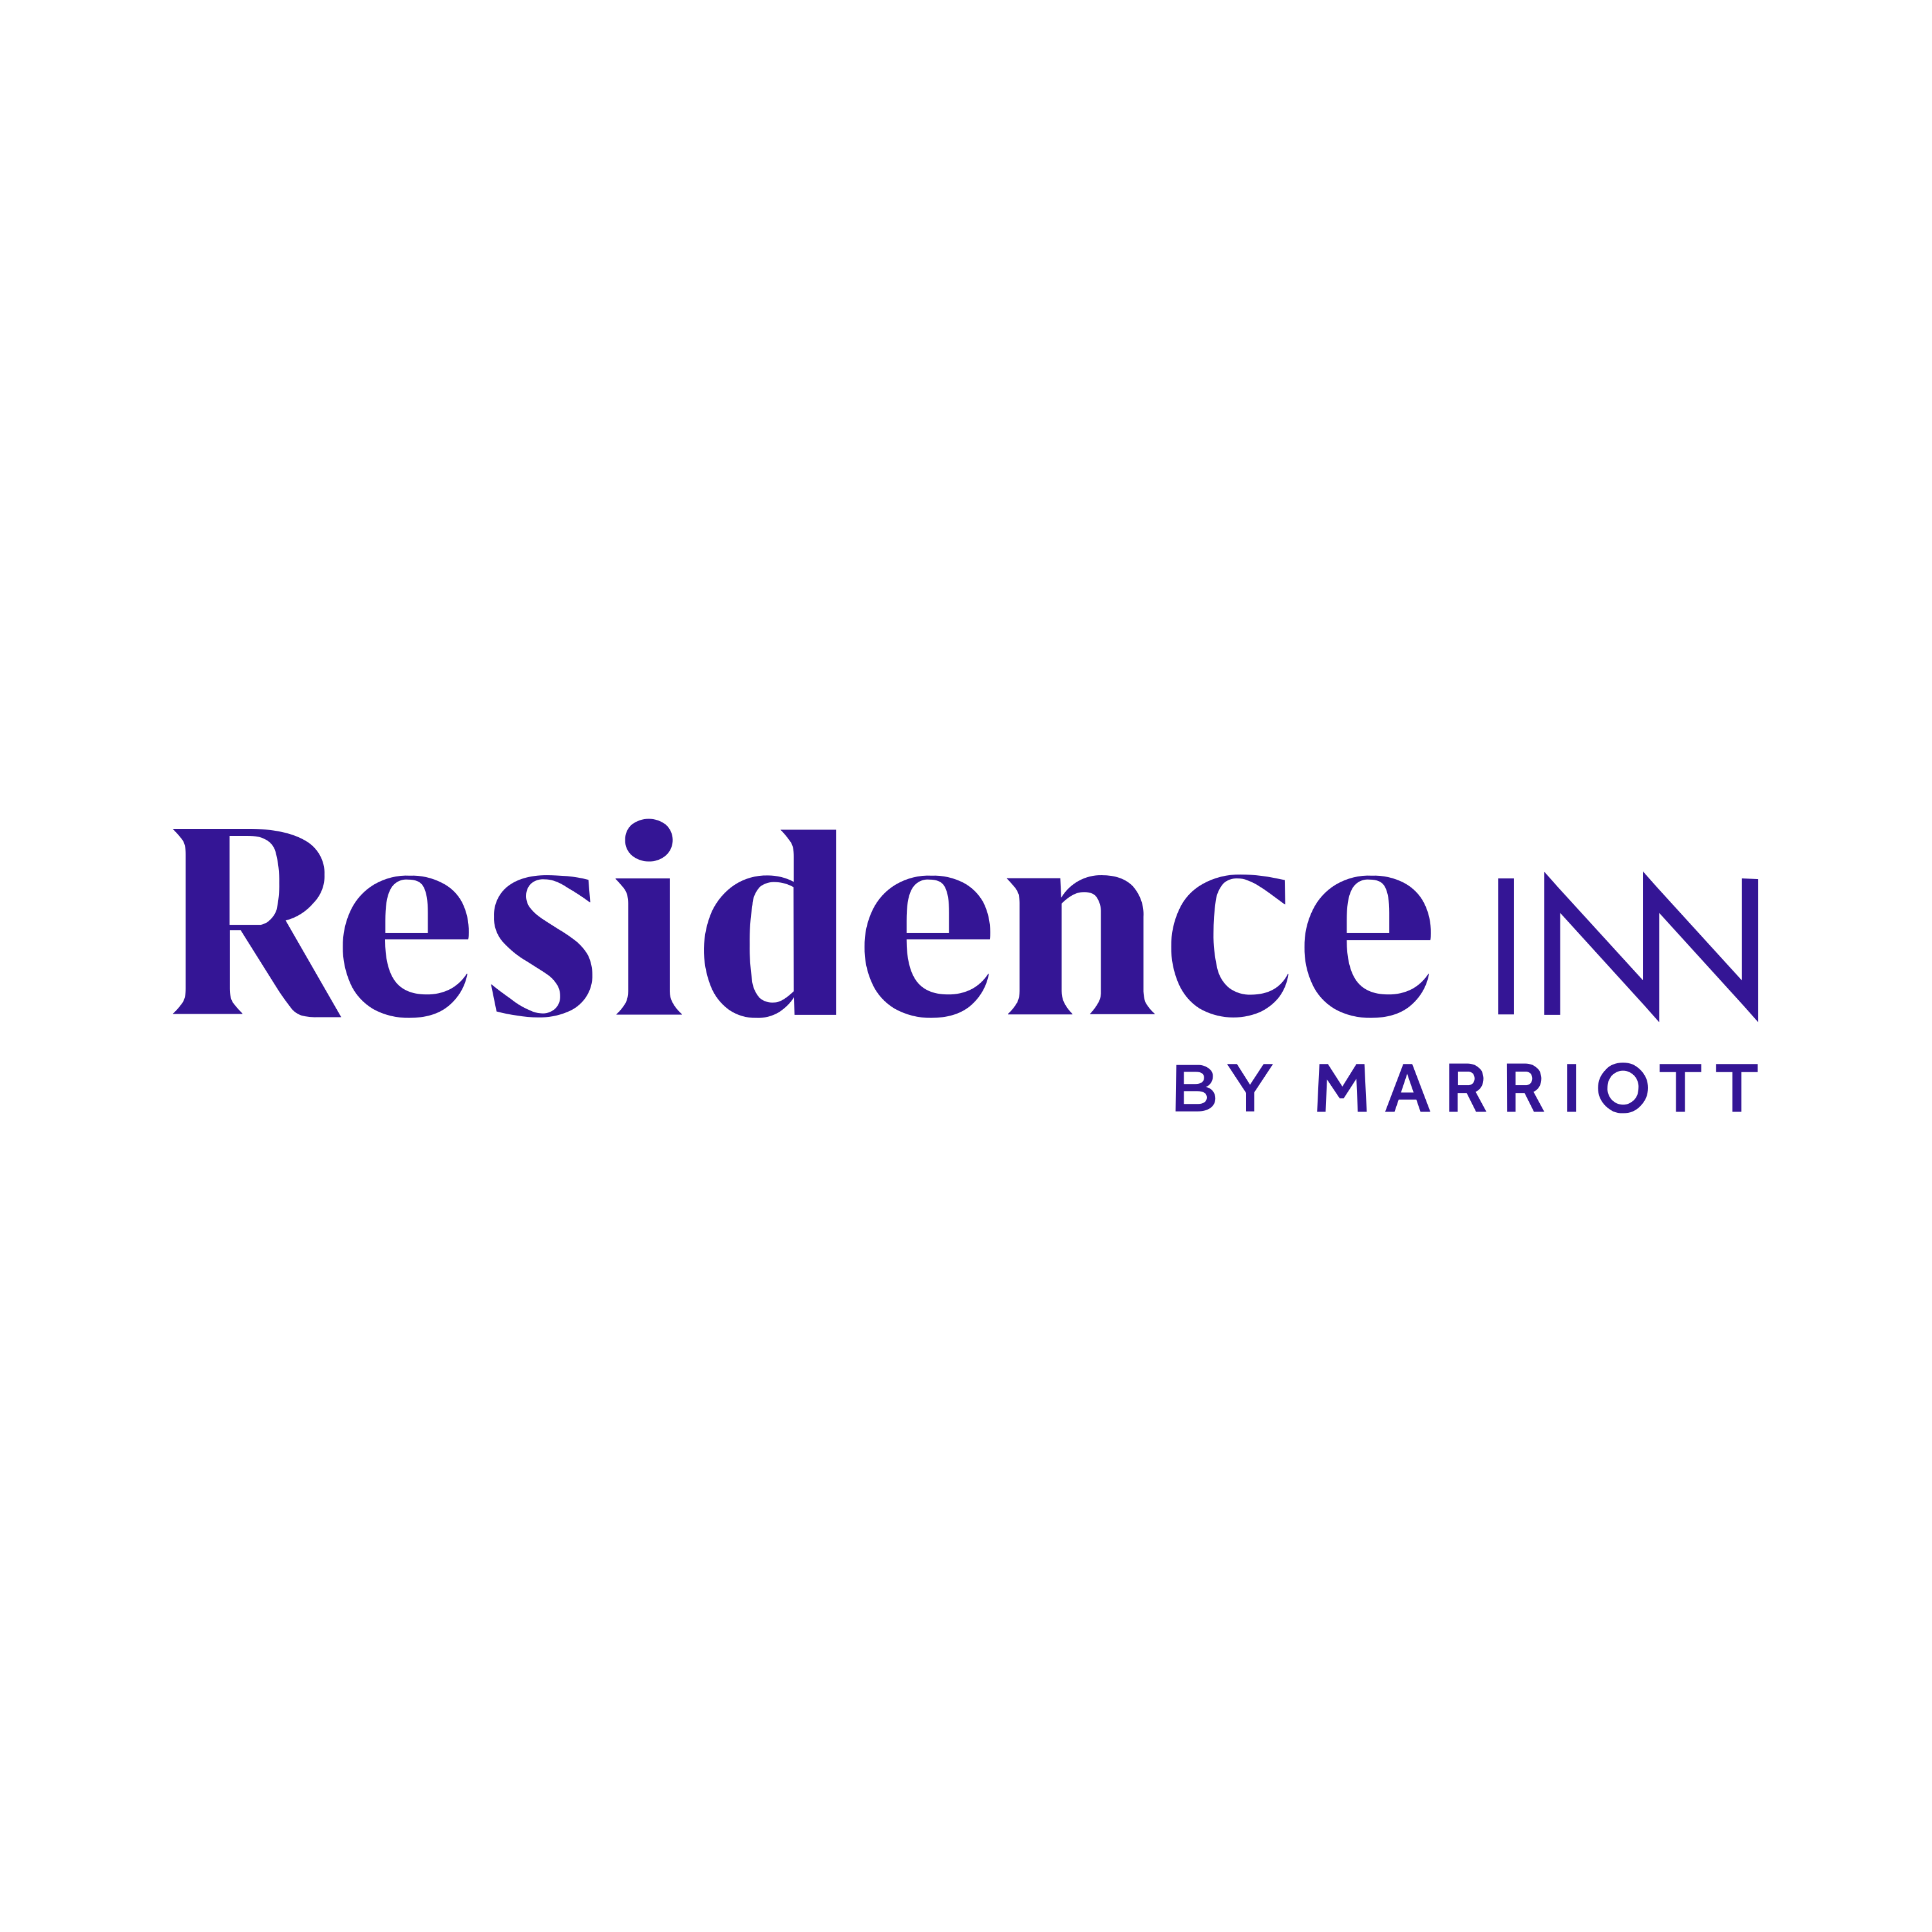 Residence Inn Logo  Transparent Clipart